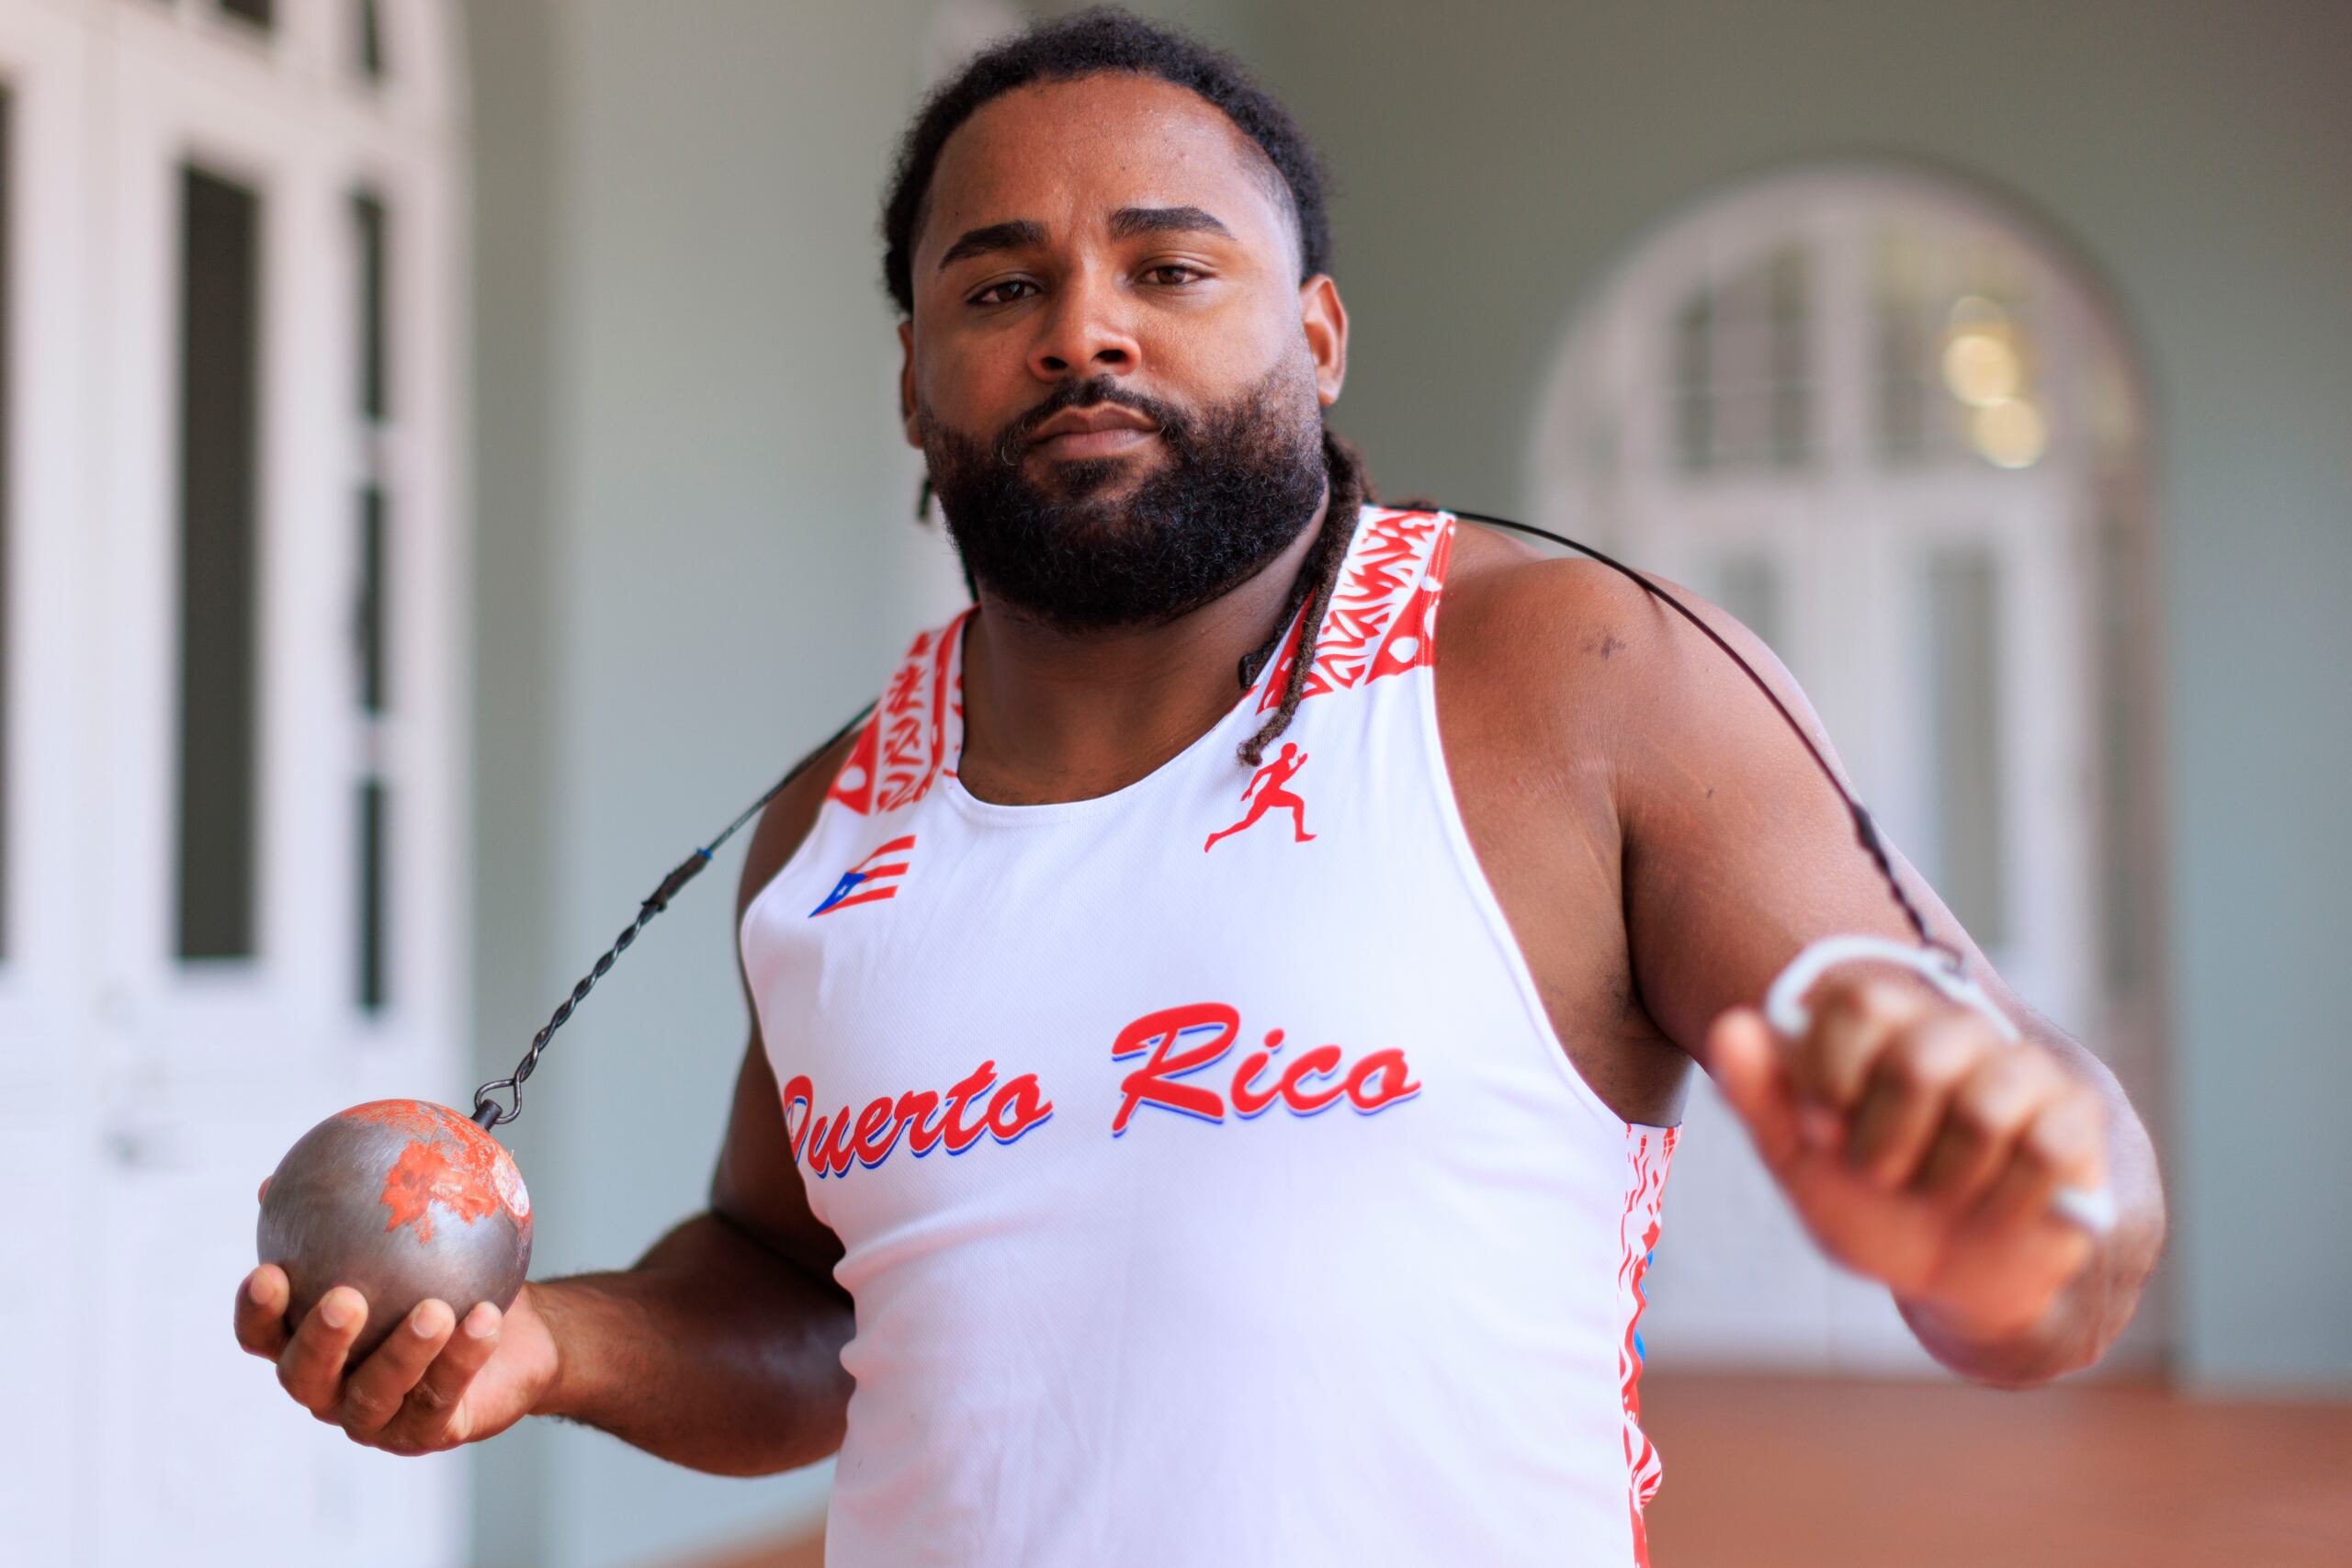 Jerome Vega representará a Puerto Rico en los Centroamericanos en el evento de lanzamiento del martillo.